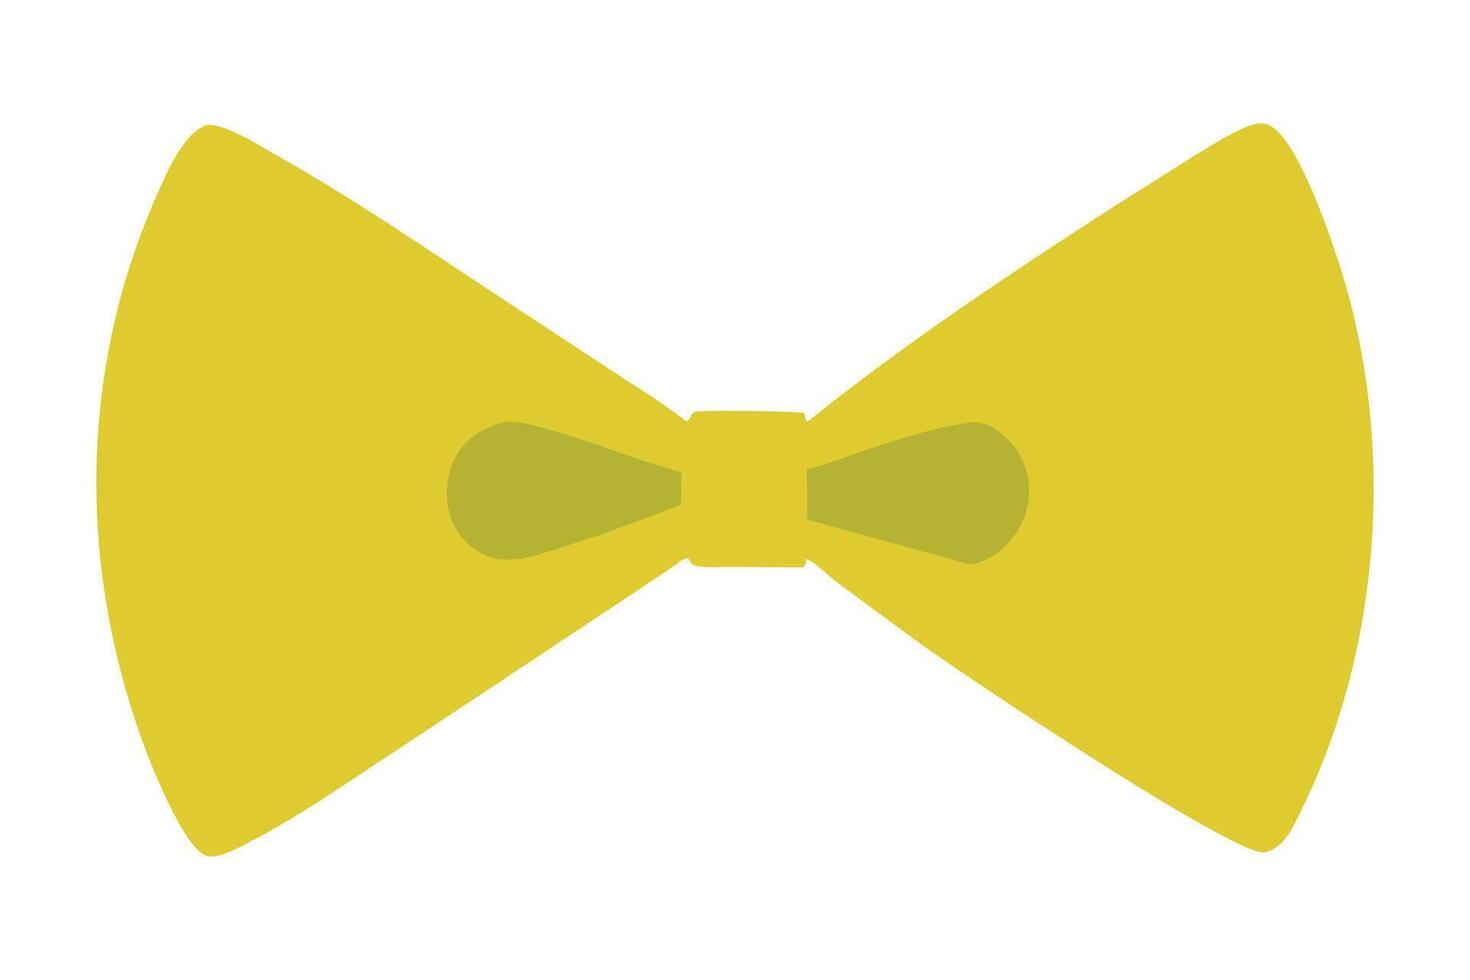 Bow tie icon. Bowtie ribbon man tuxedo icon isolated on white background vector